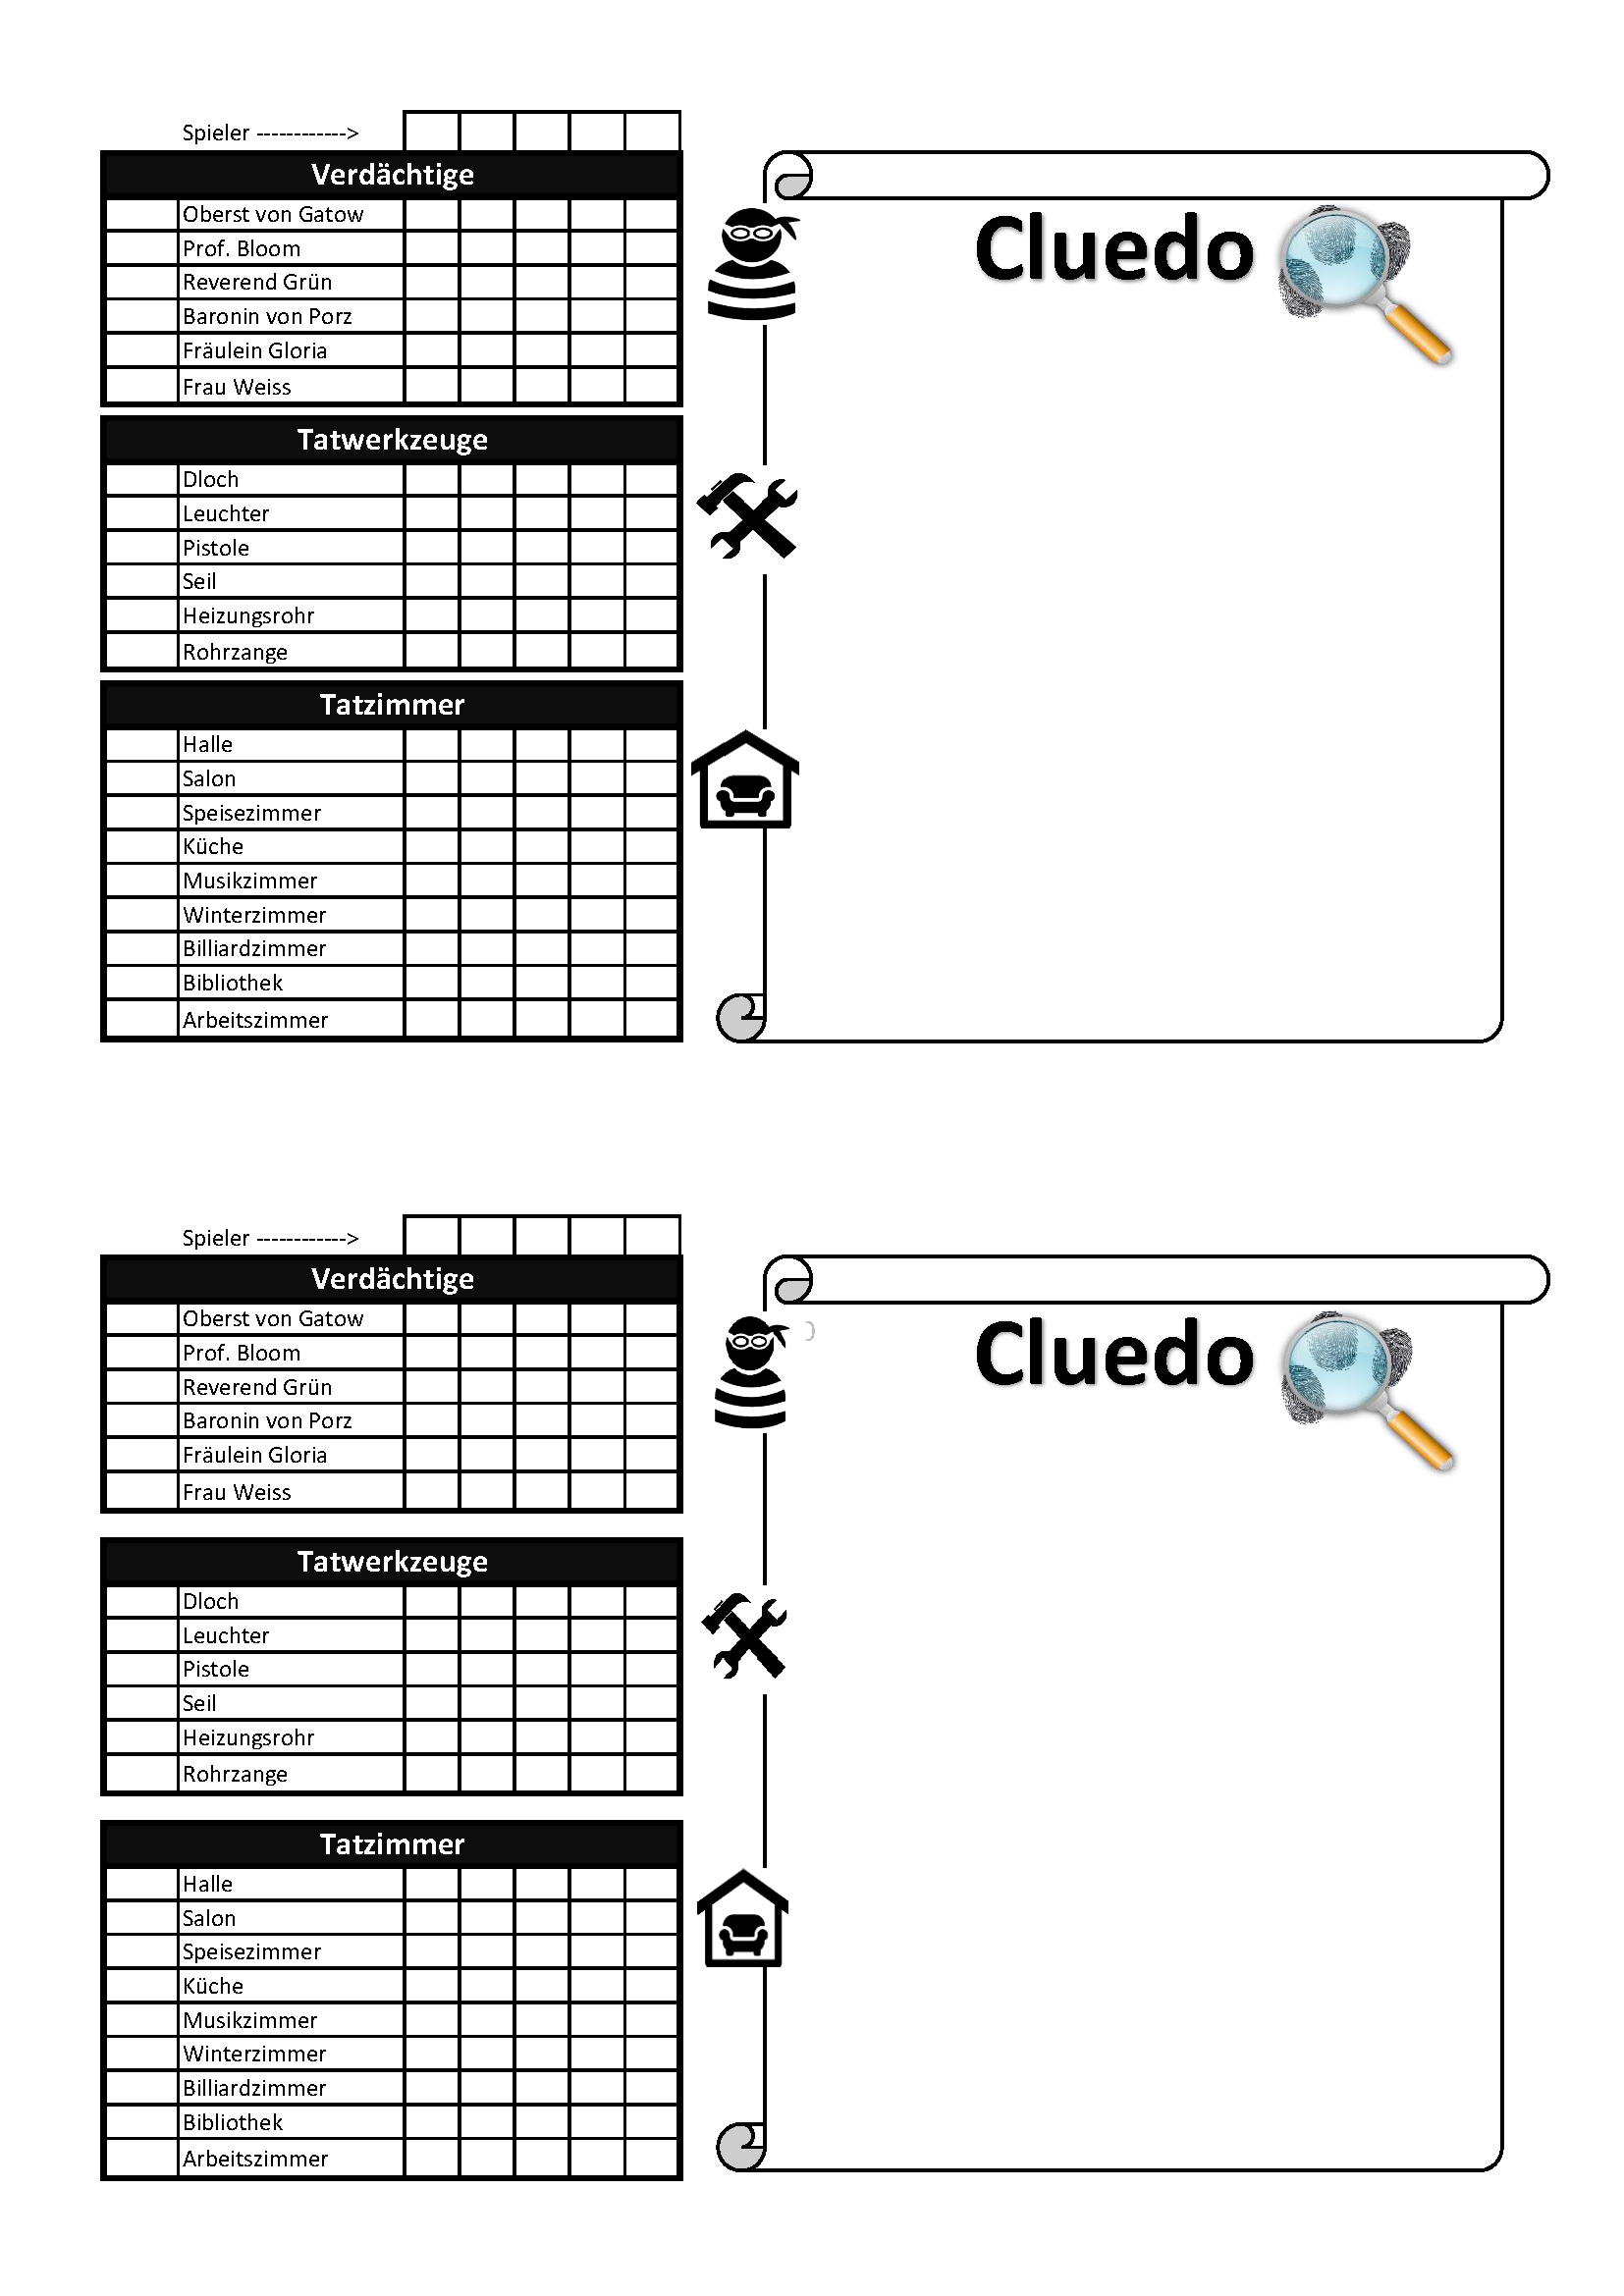 Cluedo Notizblock Zum Ausdrucken Notizblock Cluedo Spiel Ausdrucken